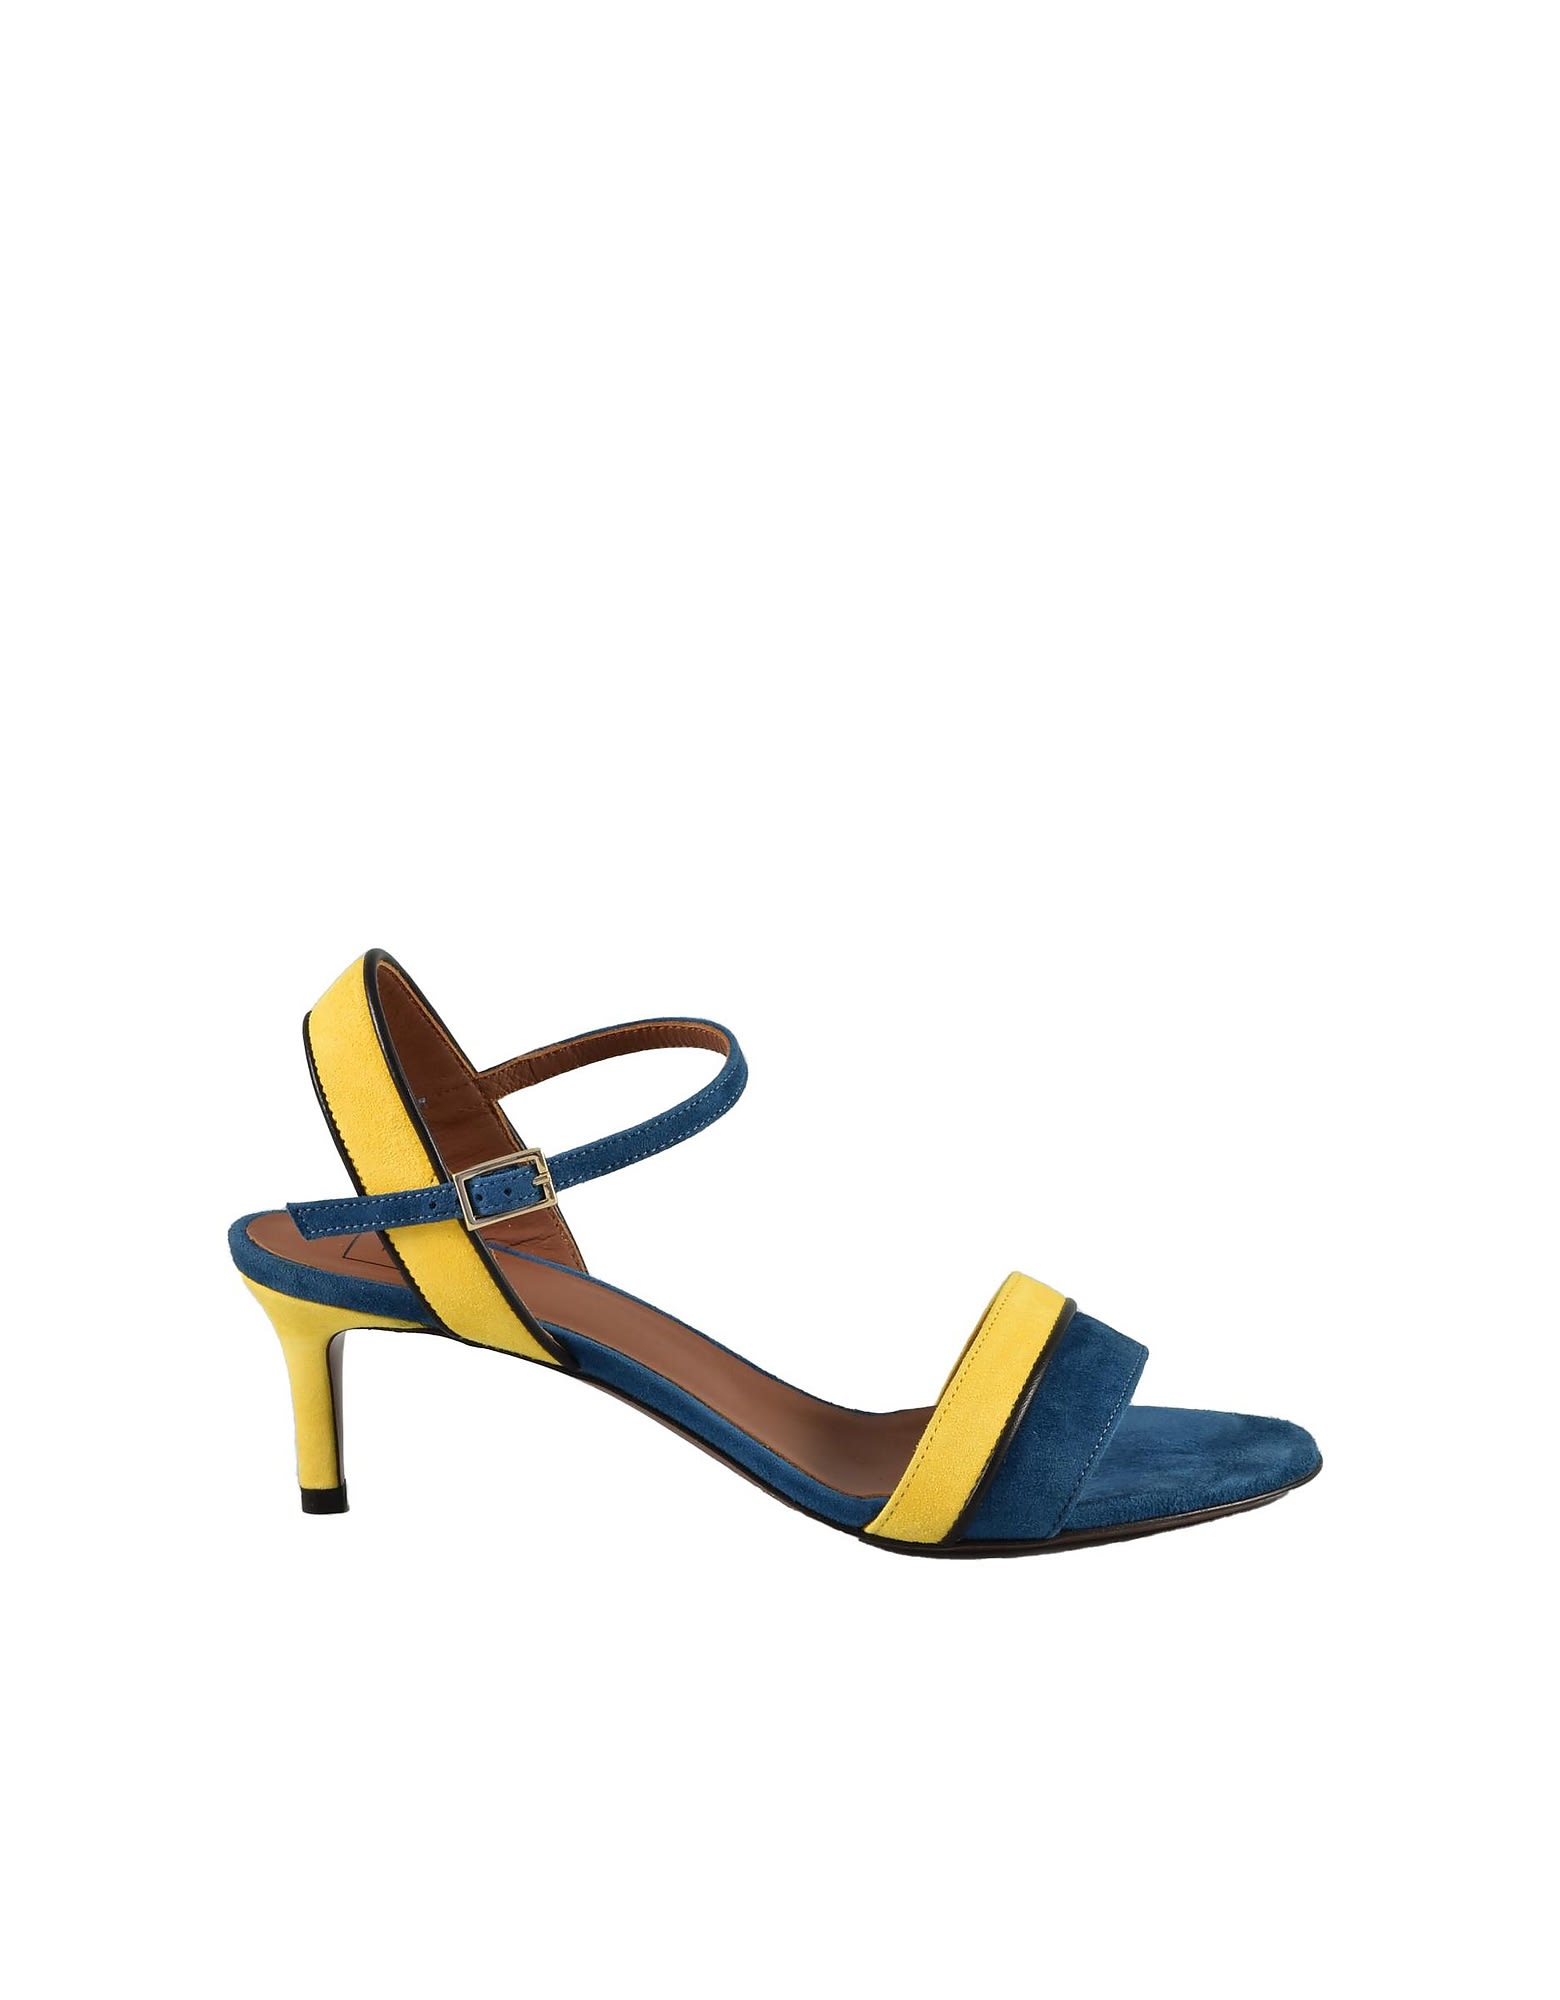 L'Autre Chose Womens Blue / Yellow Sandals